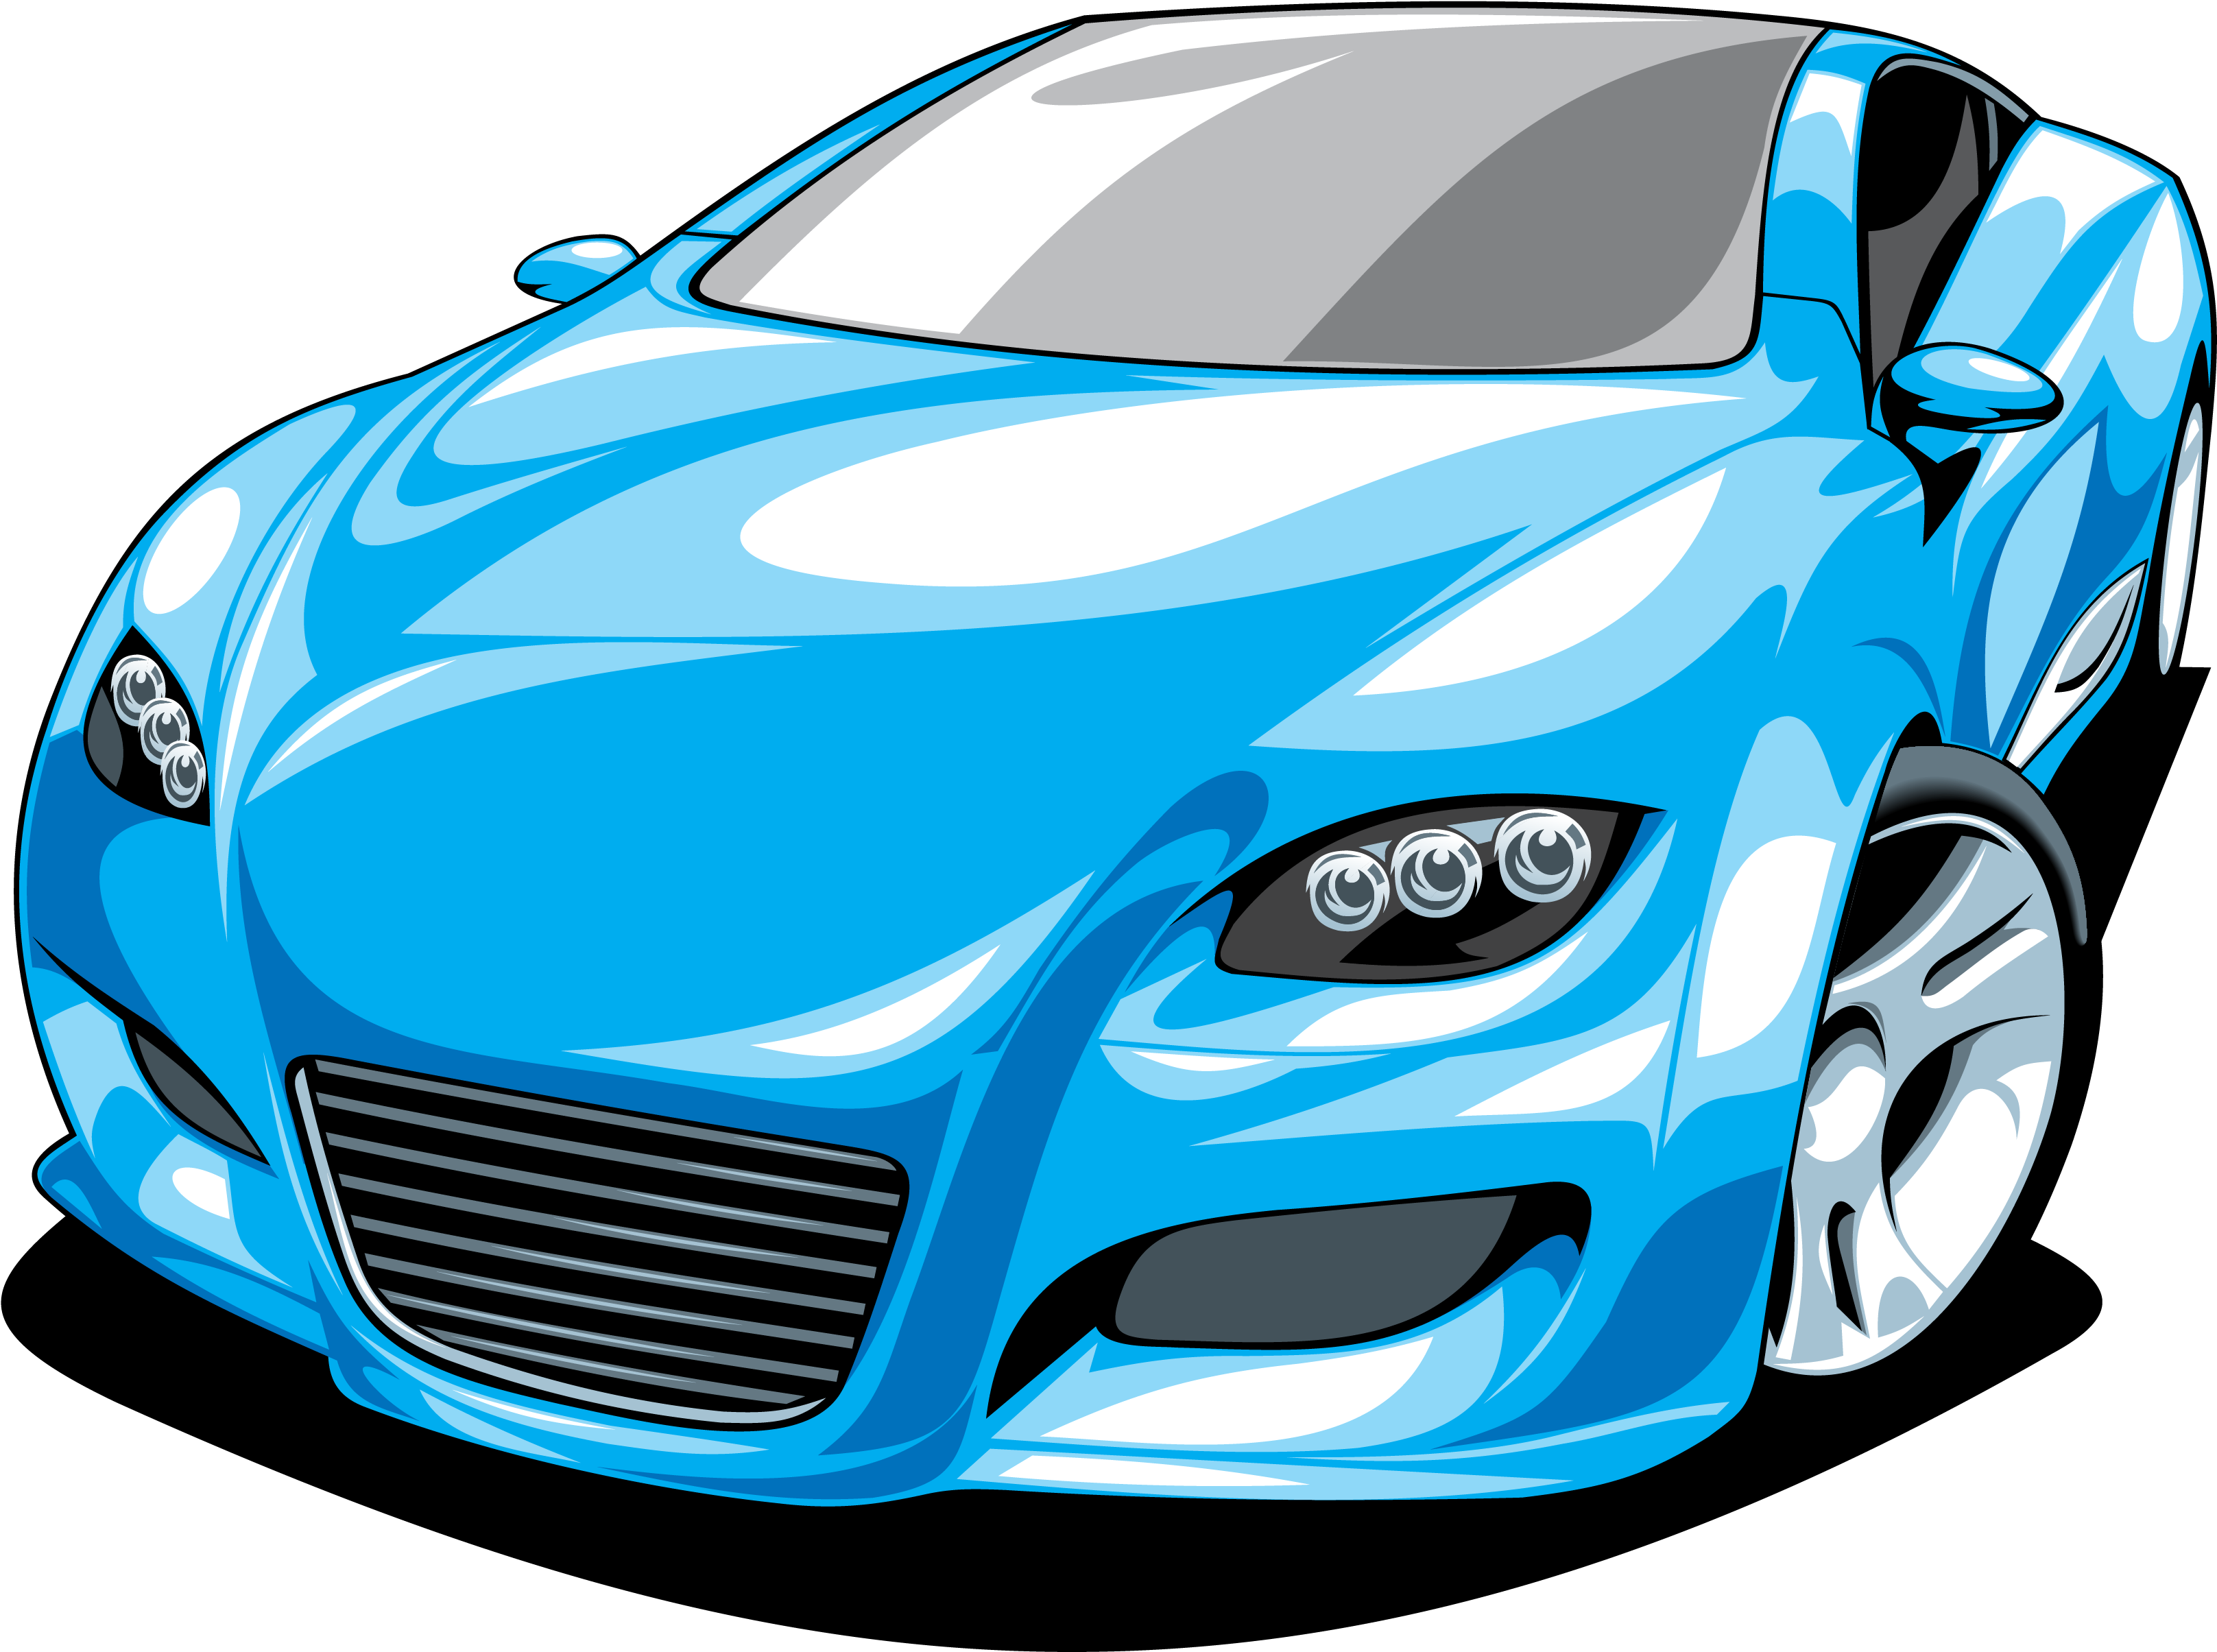 Blue Sports Car Illustration.png